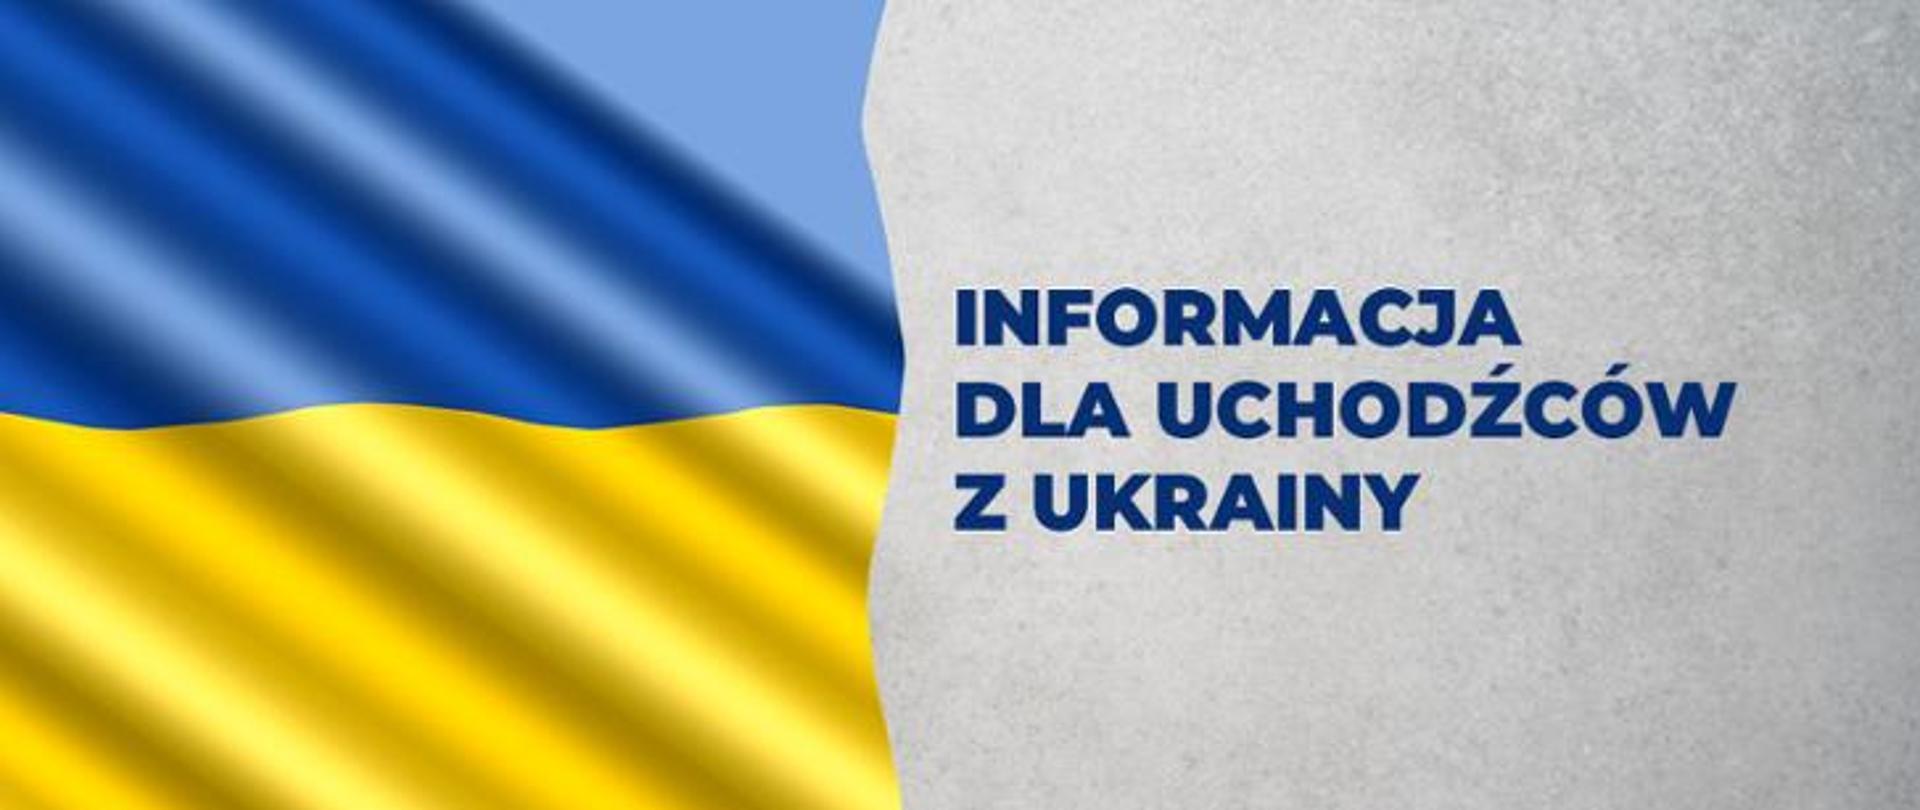 Flaga Ukrainy, Informacja dla uchodźców z Ukrainy